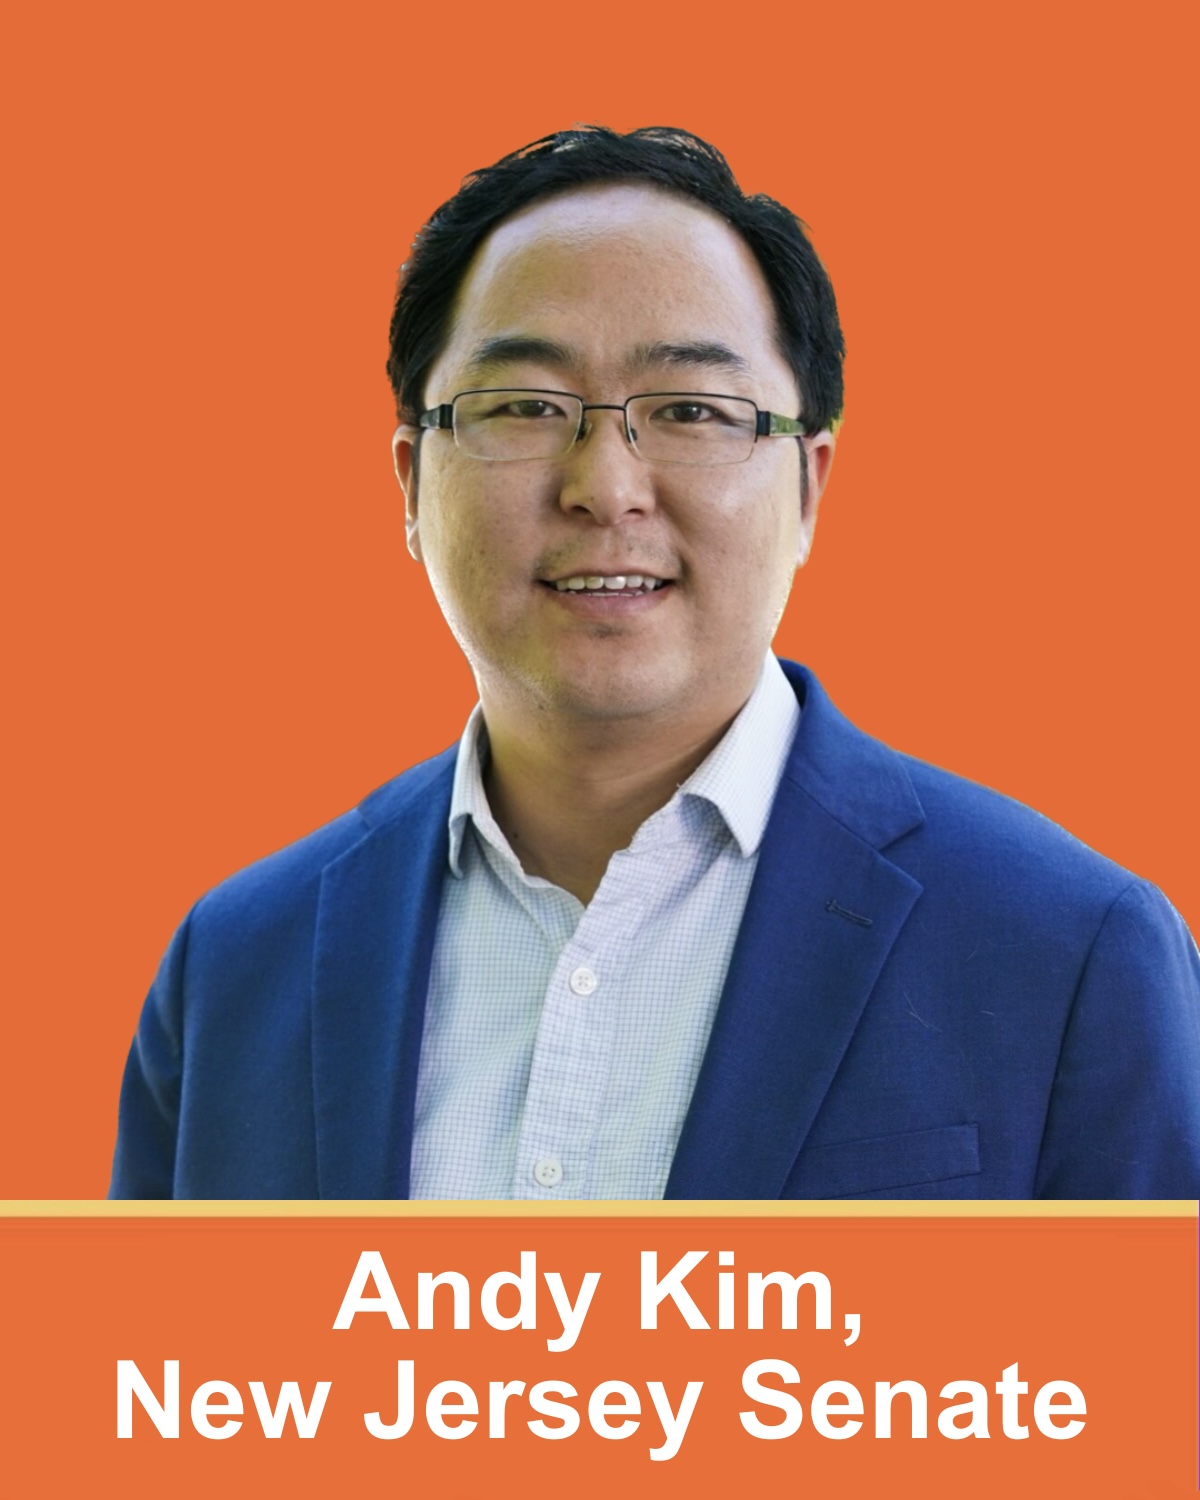 Andy Kim, New Jersey Senate